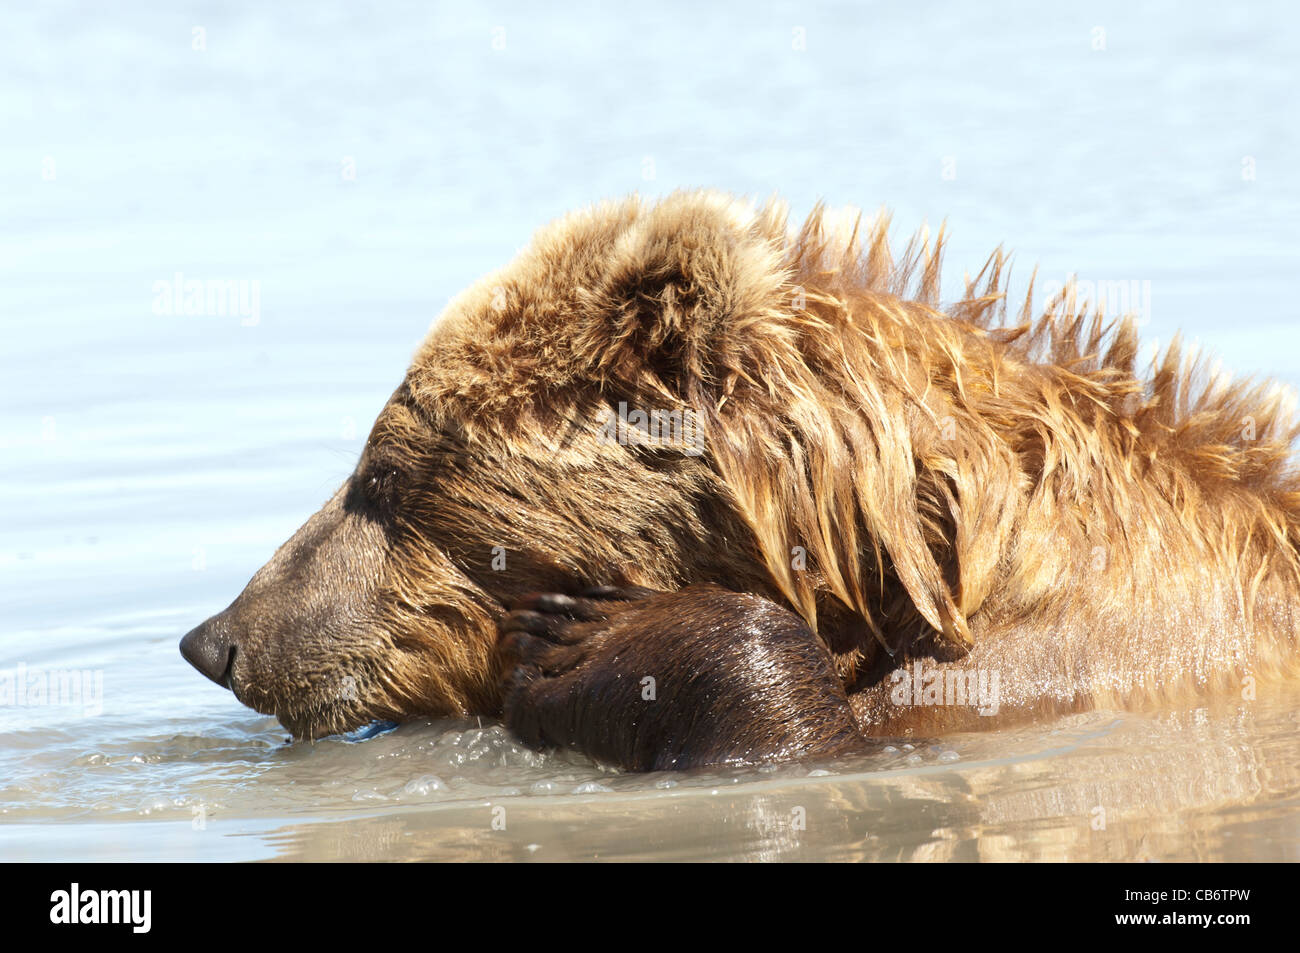 Stock Foto von einem Alaskan Braunbär in einem Bach baden. Stockfoto